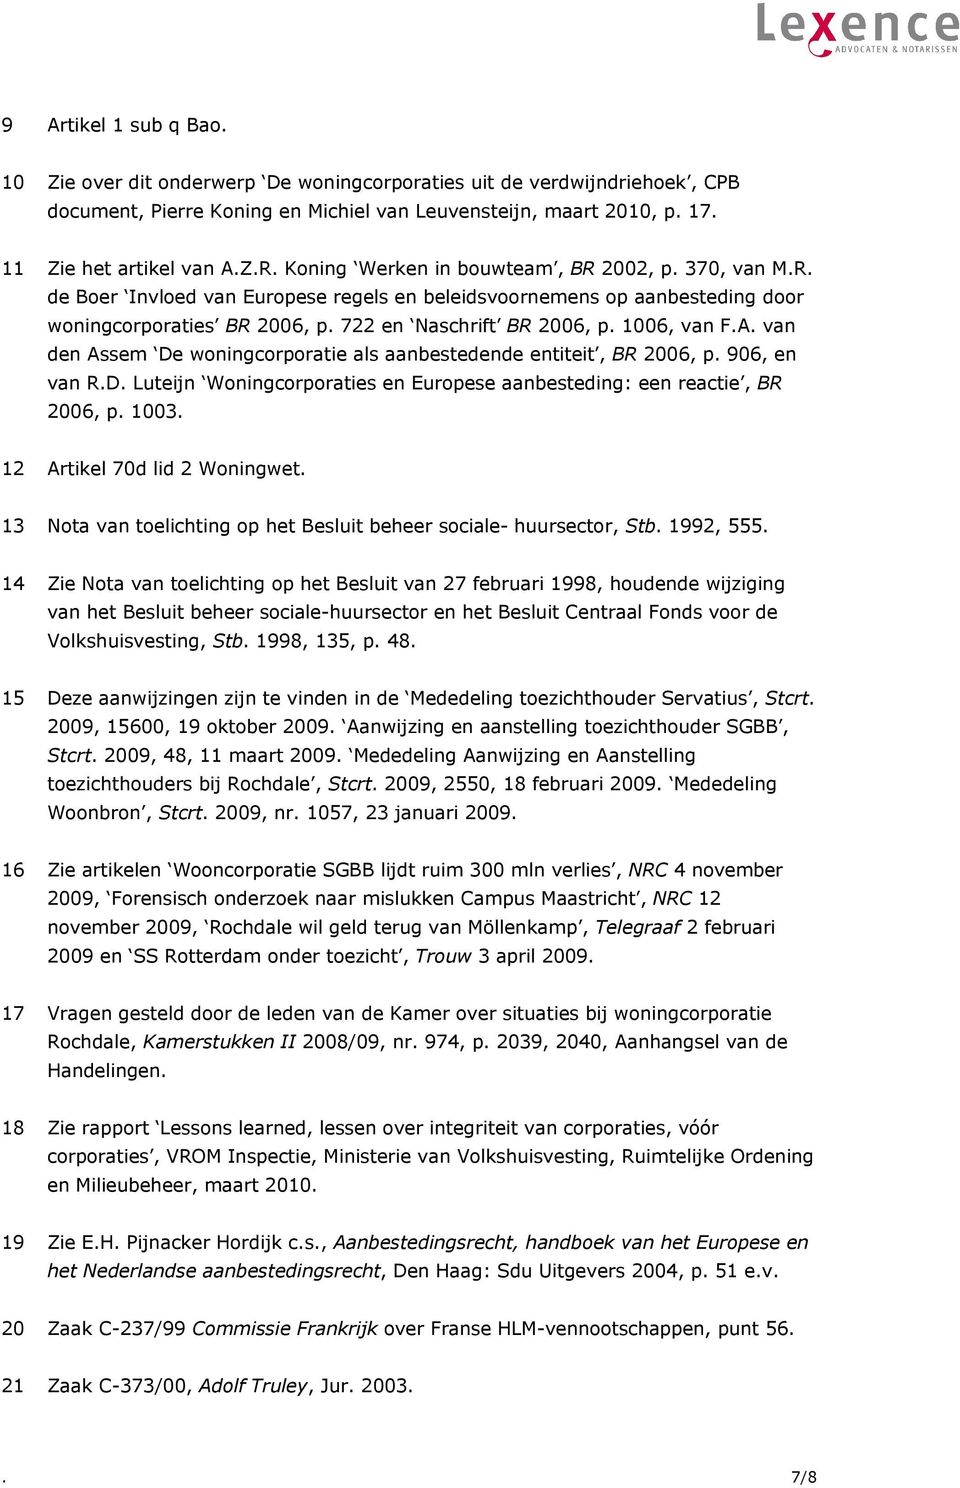 1006, van F.A. van den Assem De woningcorporatie als aanbestedende entiteit, BR 2006, p. 906, en van R.D. Luteijn Woningcorporaties en Europese aanbesteding: een reactie, BR 2006, p. 1003.